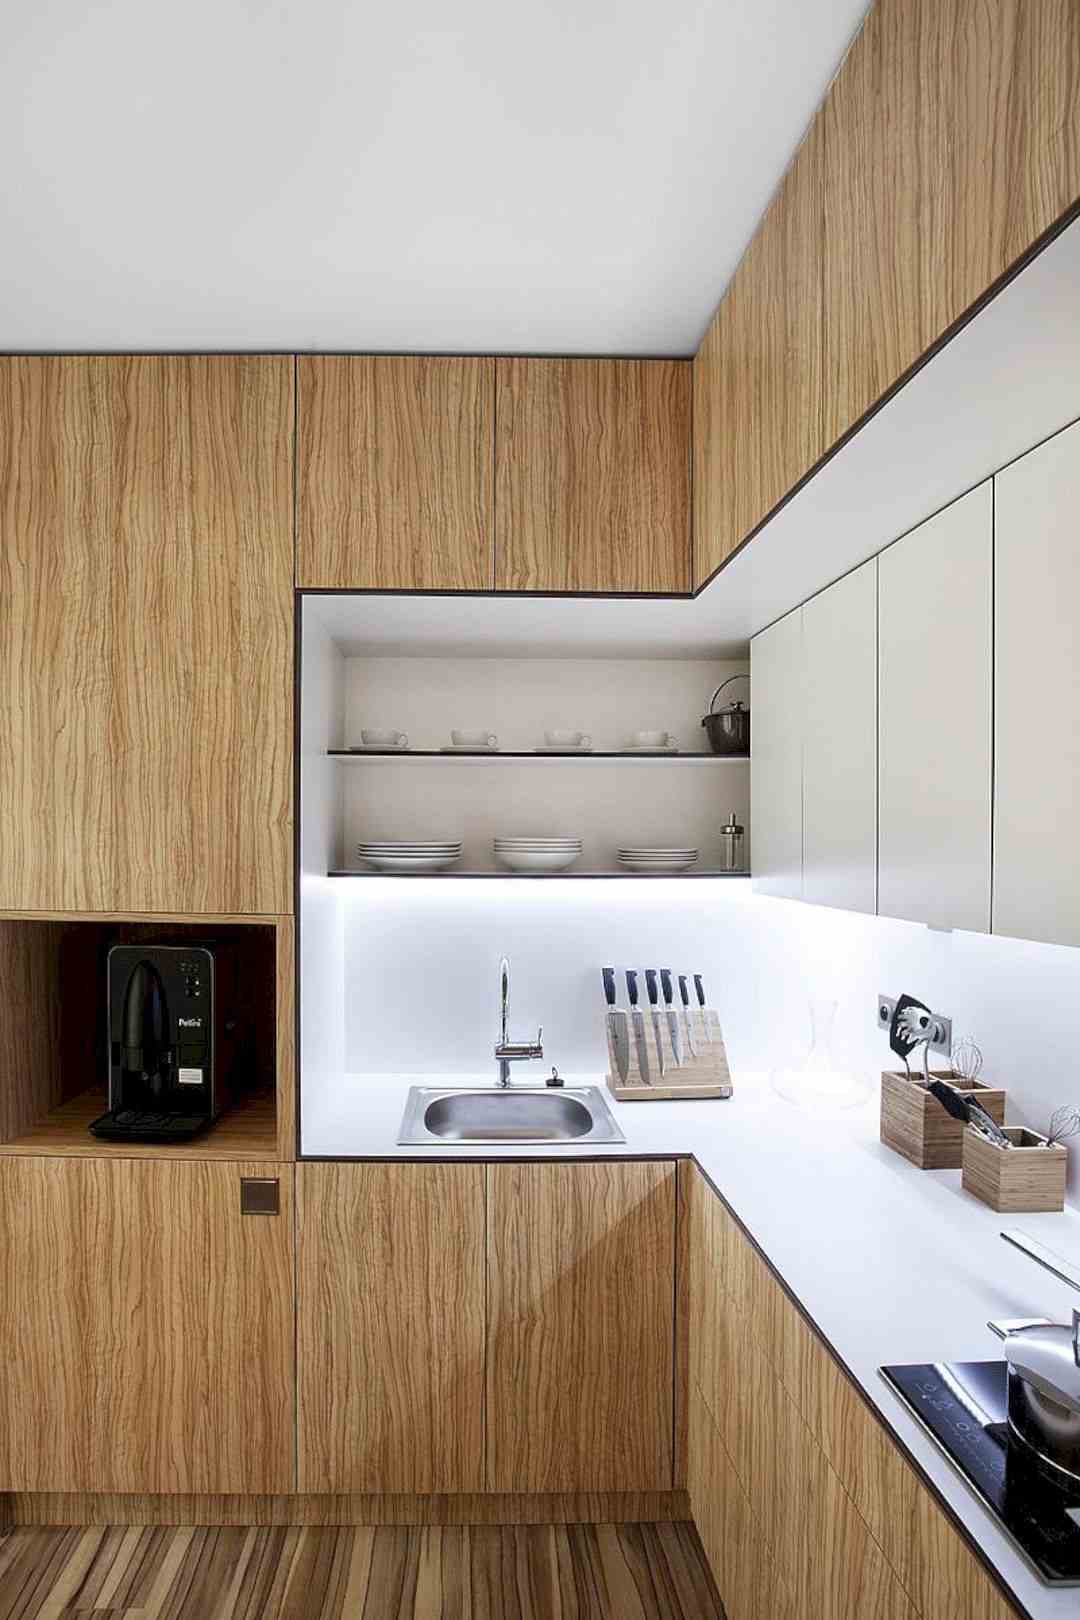 الزاوية الميتة في المطبخ تستخدم أرفف مفتوحة من الخشب الأبيض